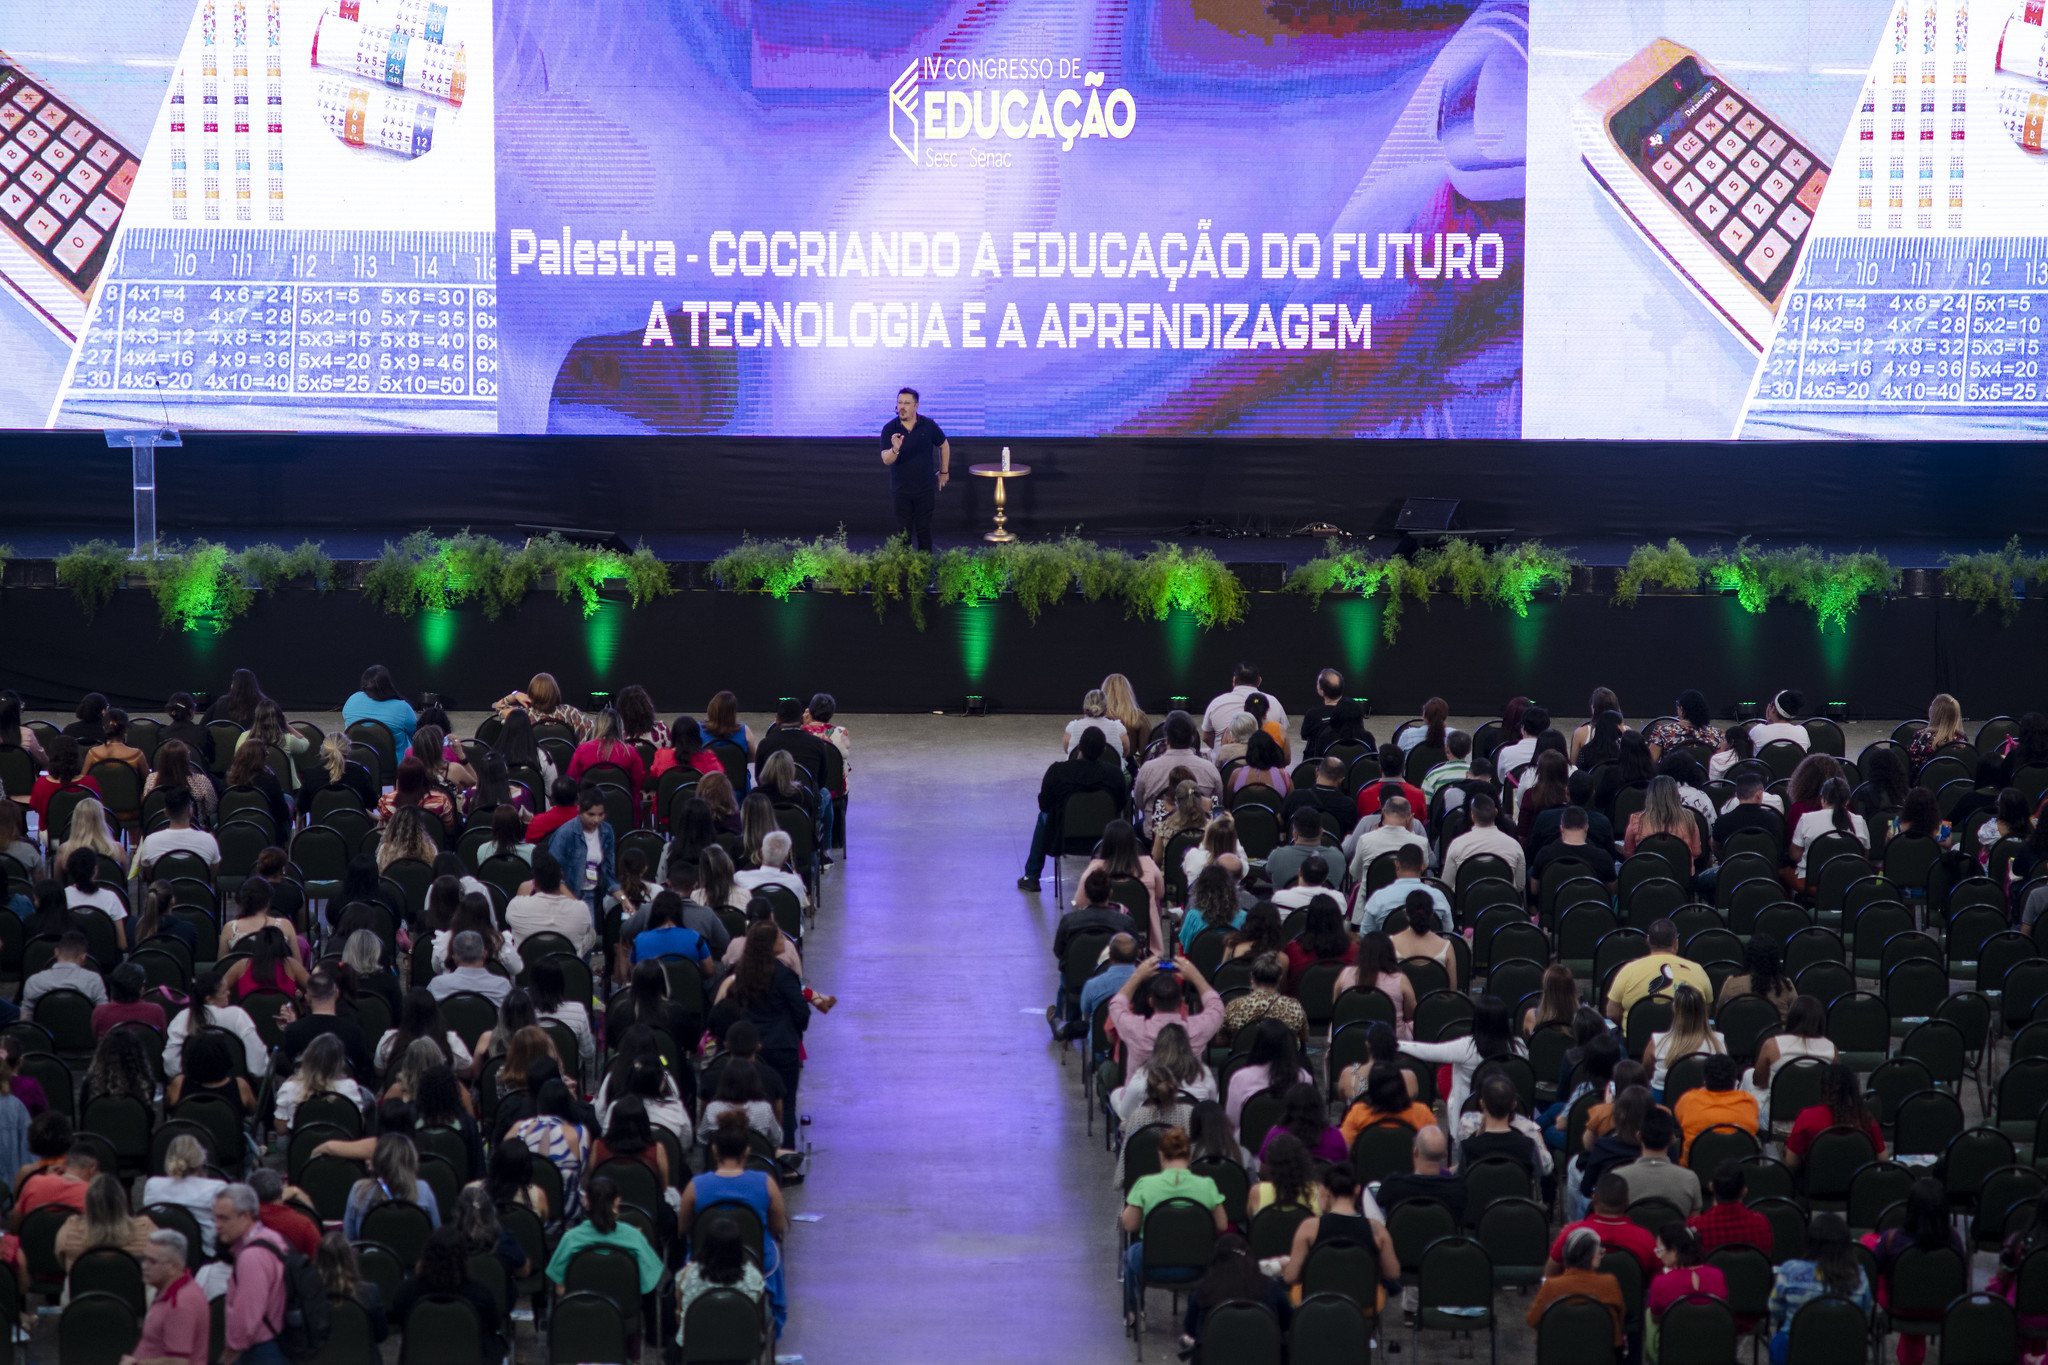 IV Congresso de Educação reúne 1500 pessoas